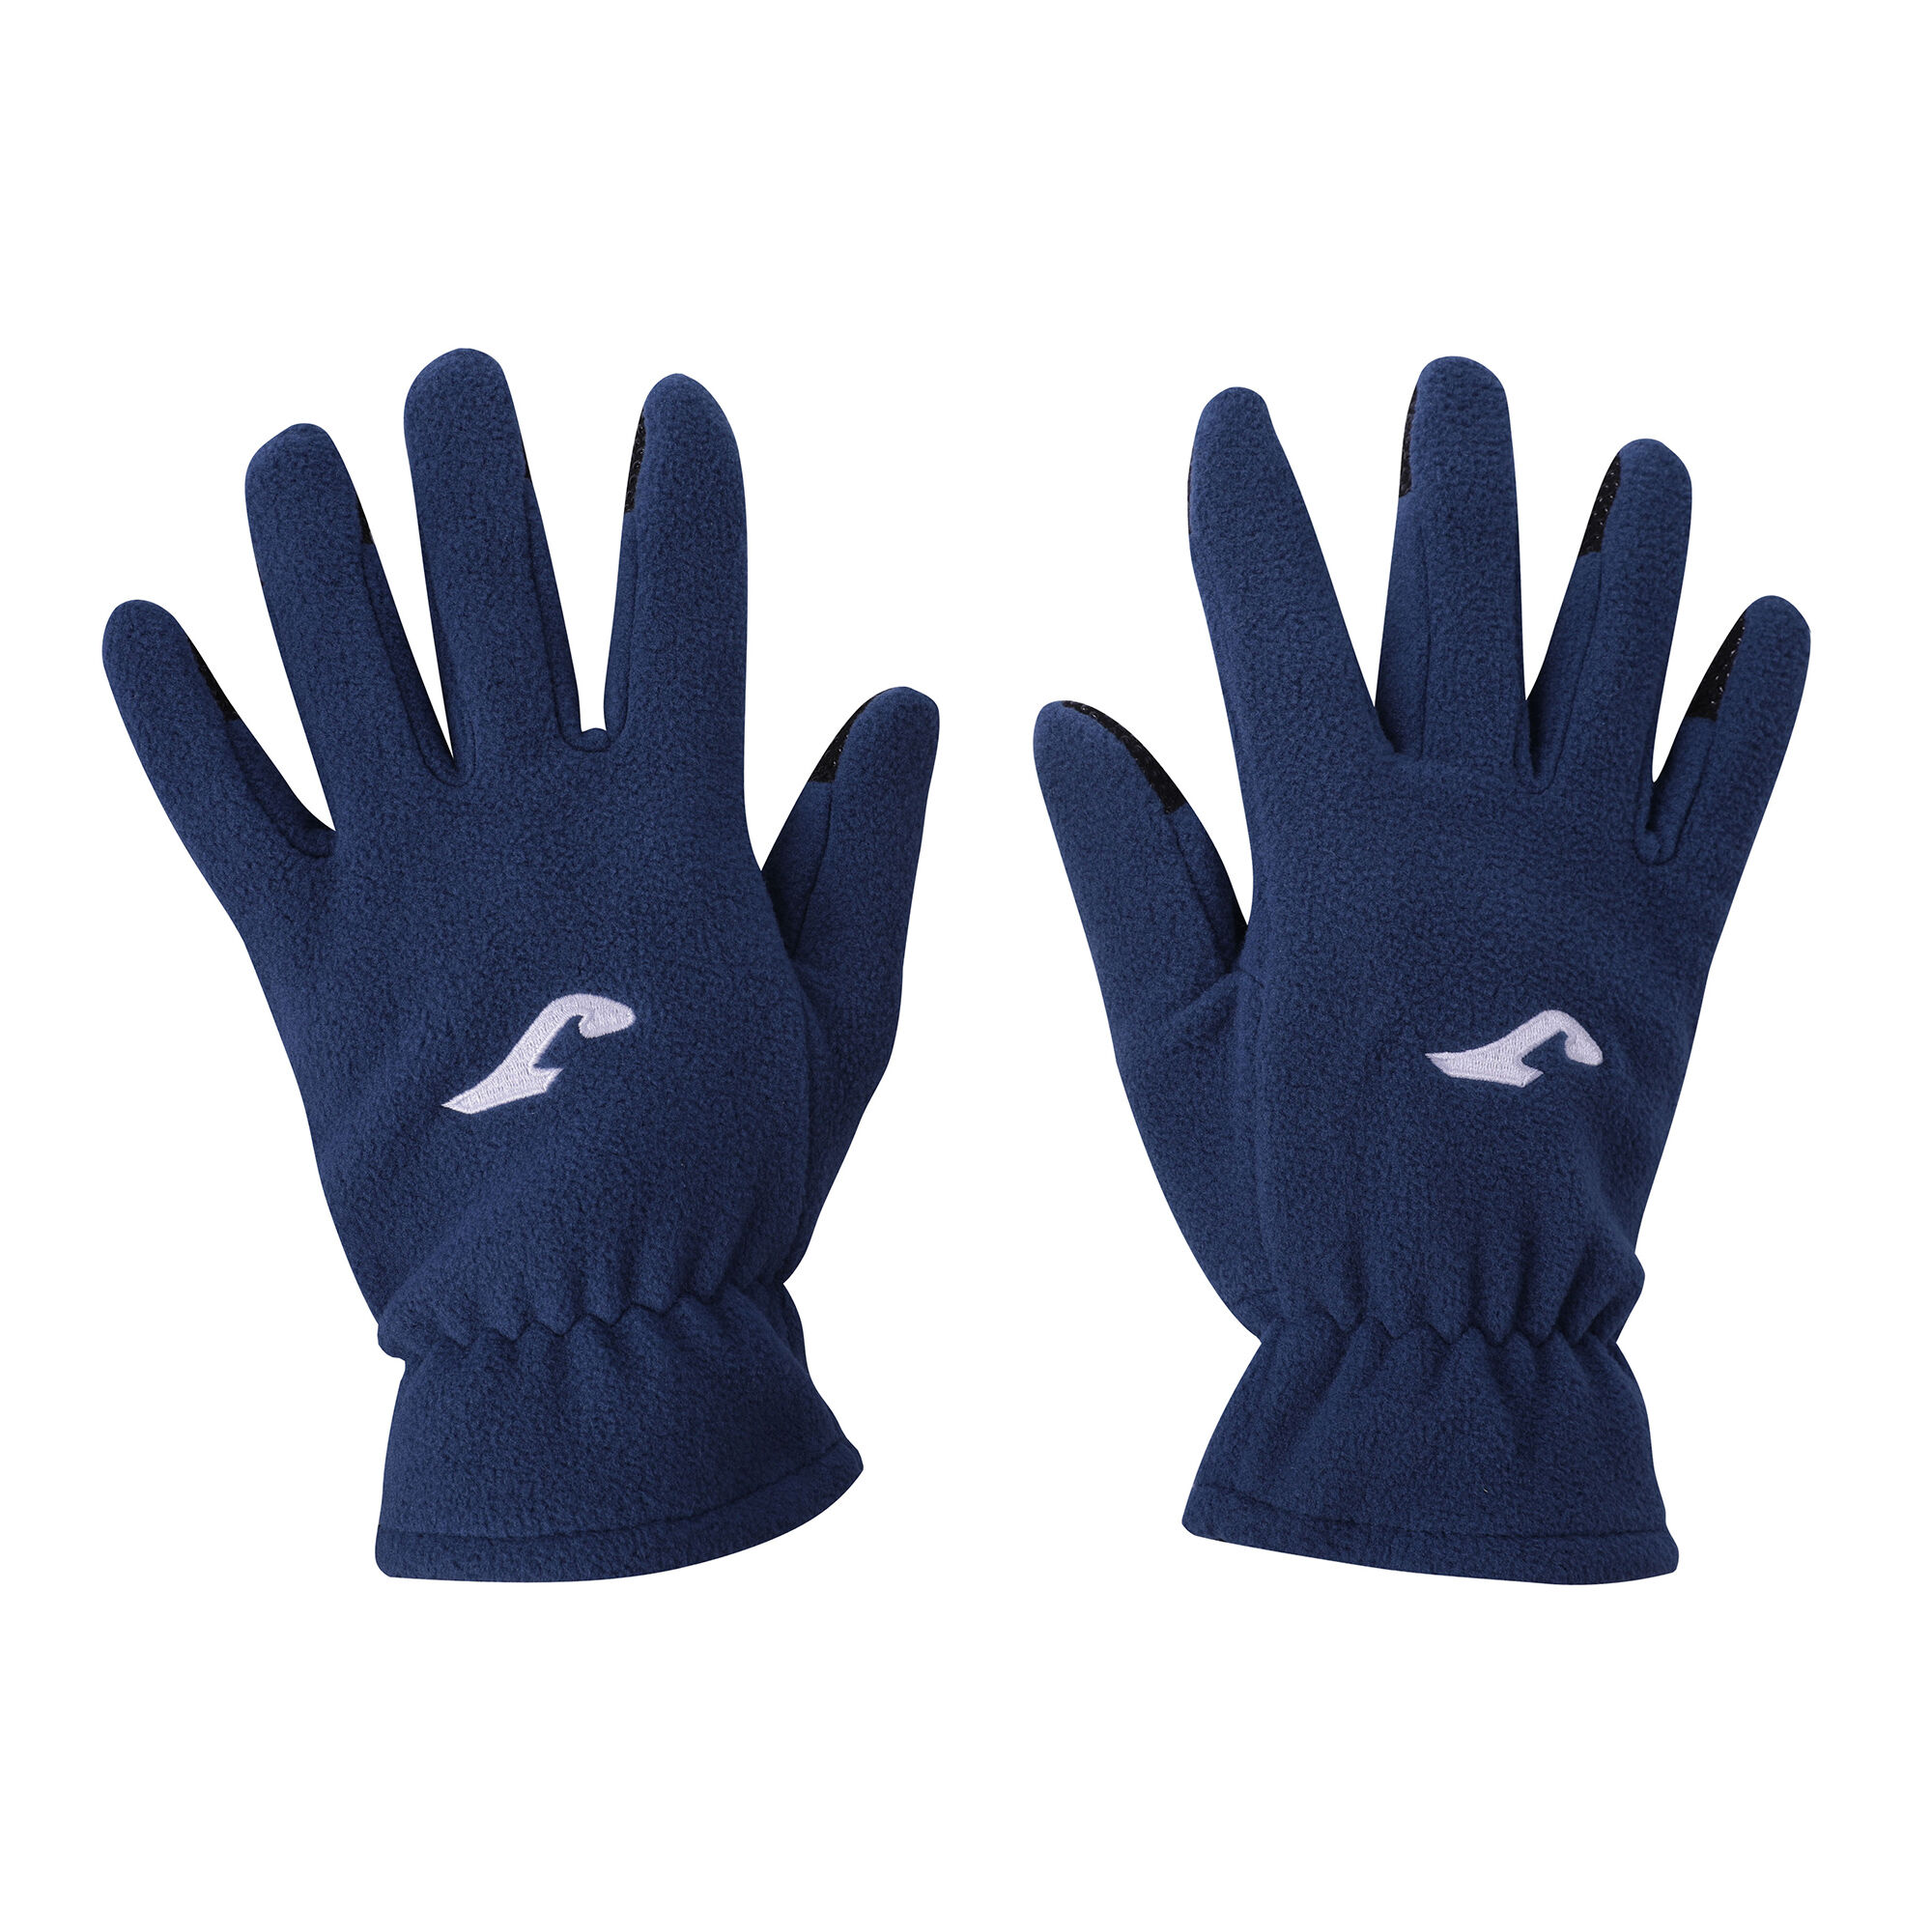 Handschuhe Polar marineblau